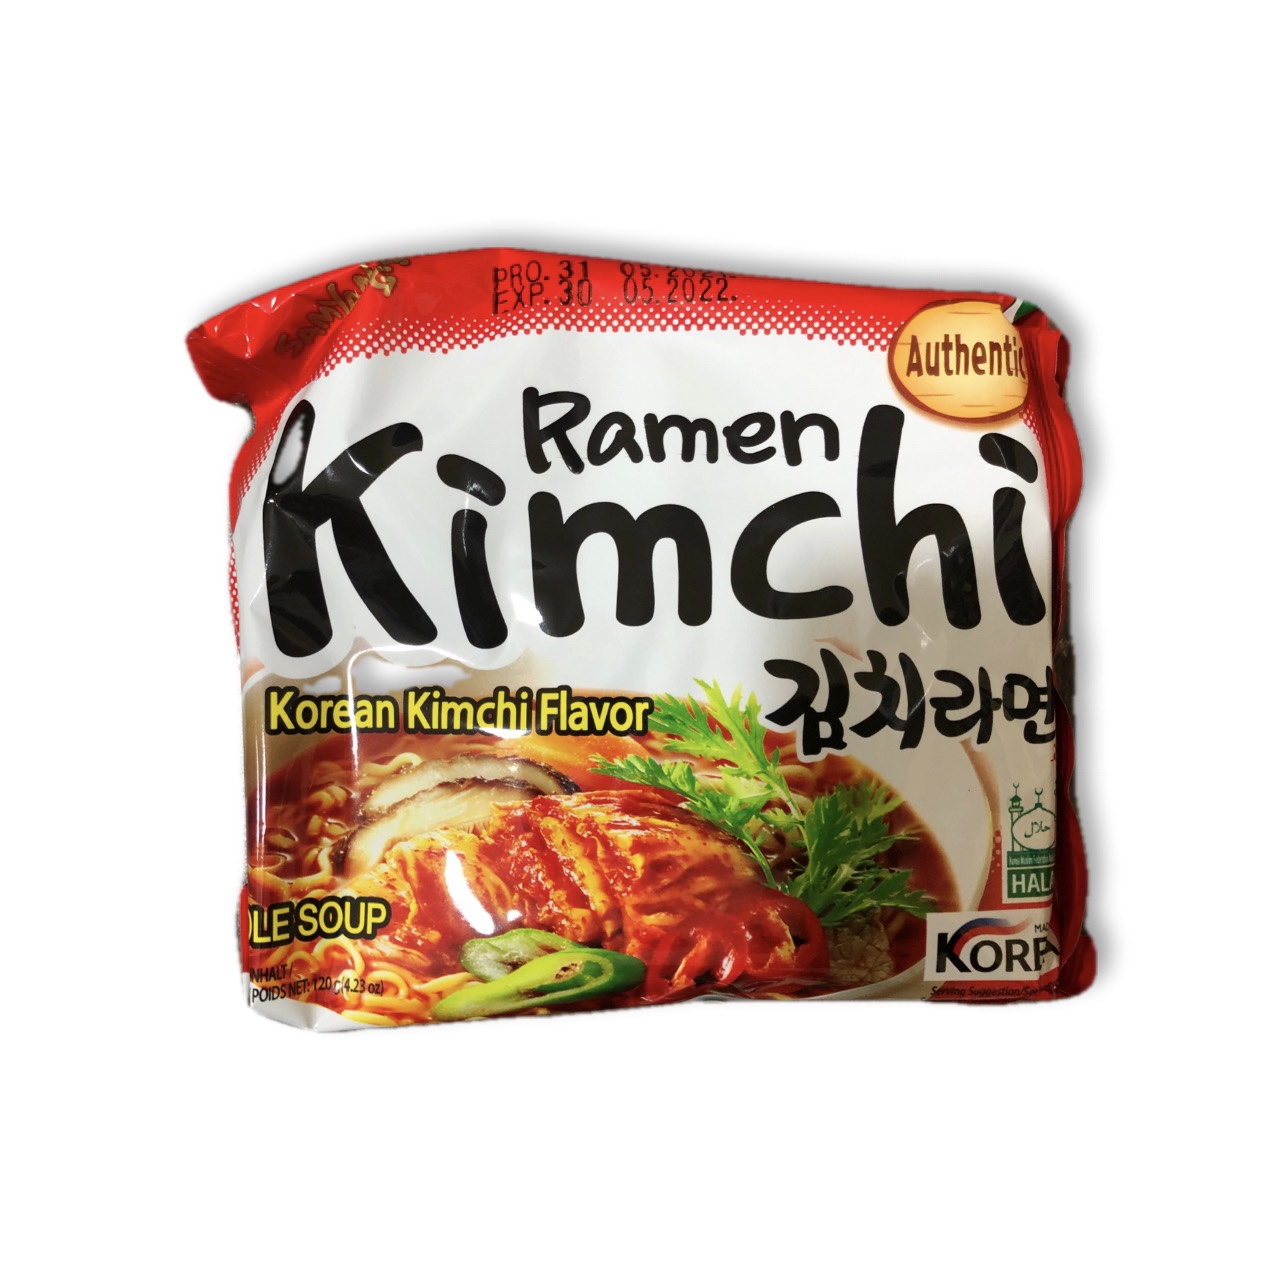 نودل فوری سرخ شده با طعم کیمچی کره ای 120 گرم سامیانگ SAMYANG ا SAMYANG Buldak fried instant noodles Korean kimchi flavor 120g